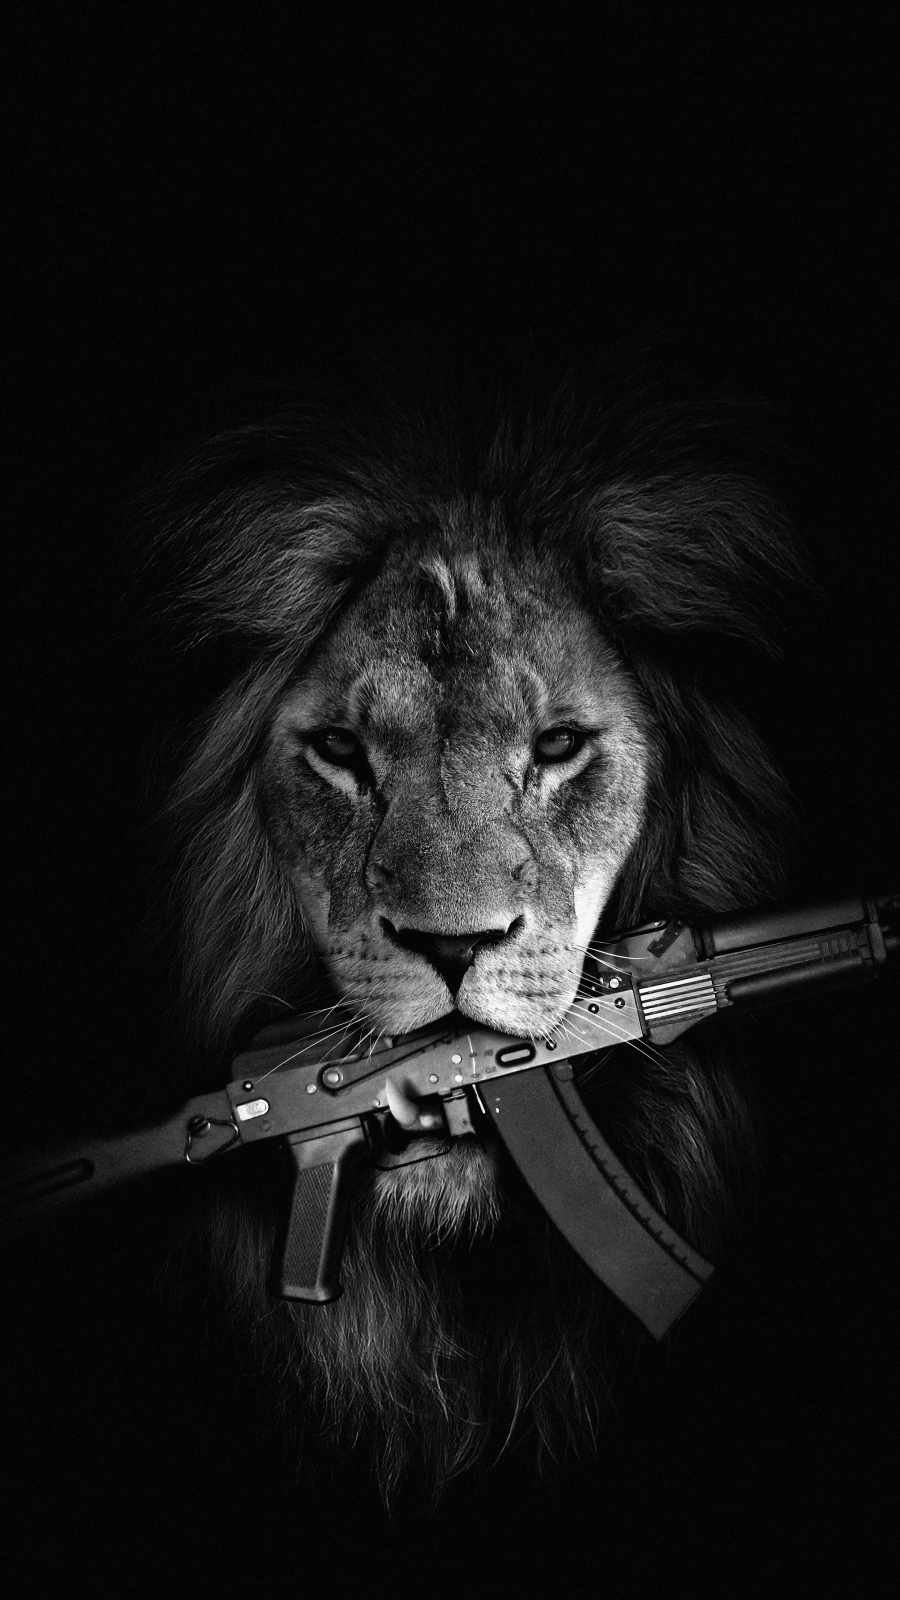 Lion with Gun